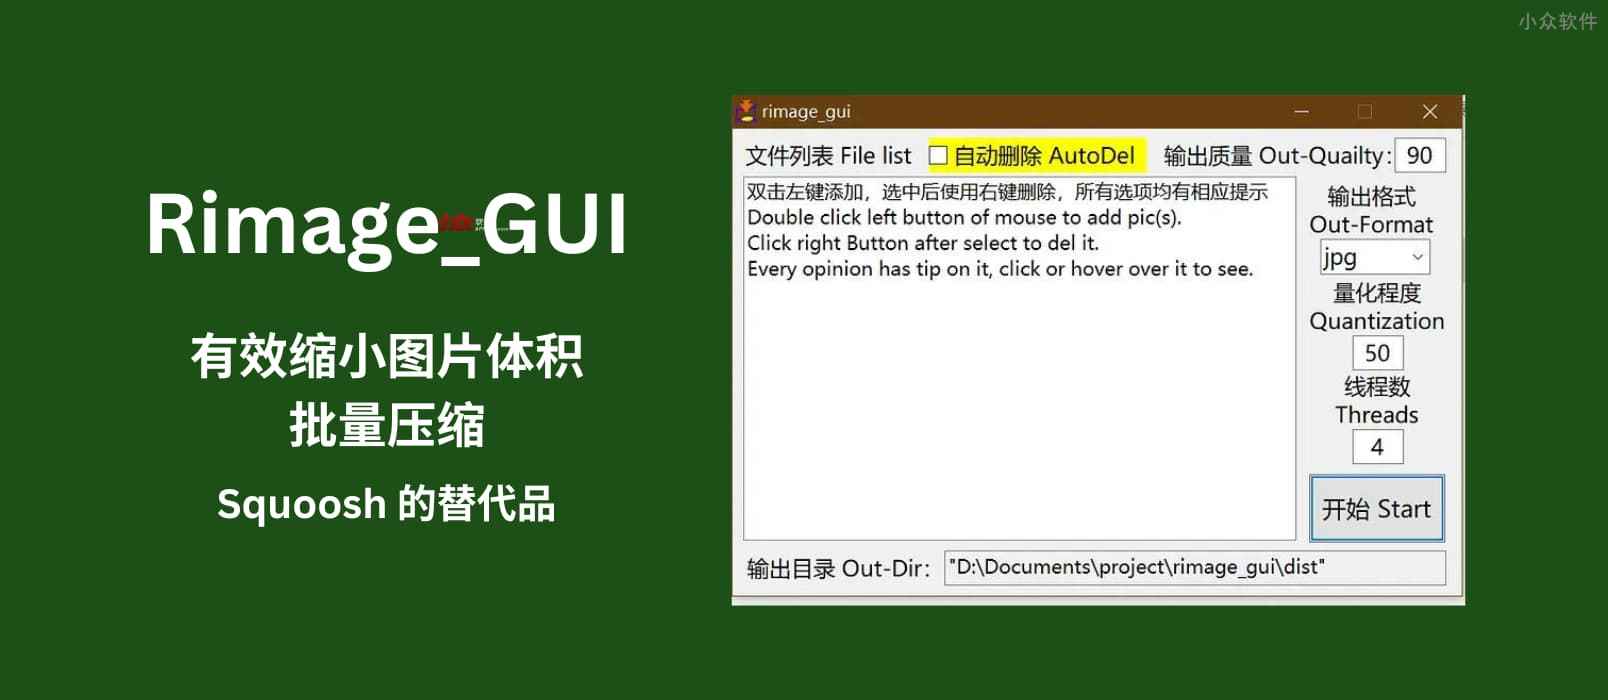 Rimage_GUI - 批量图片压缩工具：Squoosh 替代品，有效缩小图片体积[Windows]